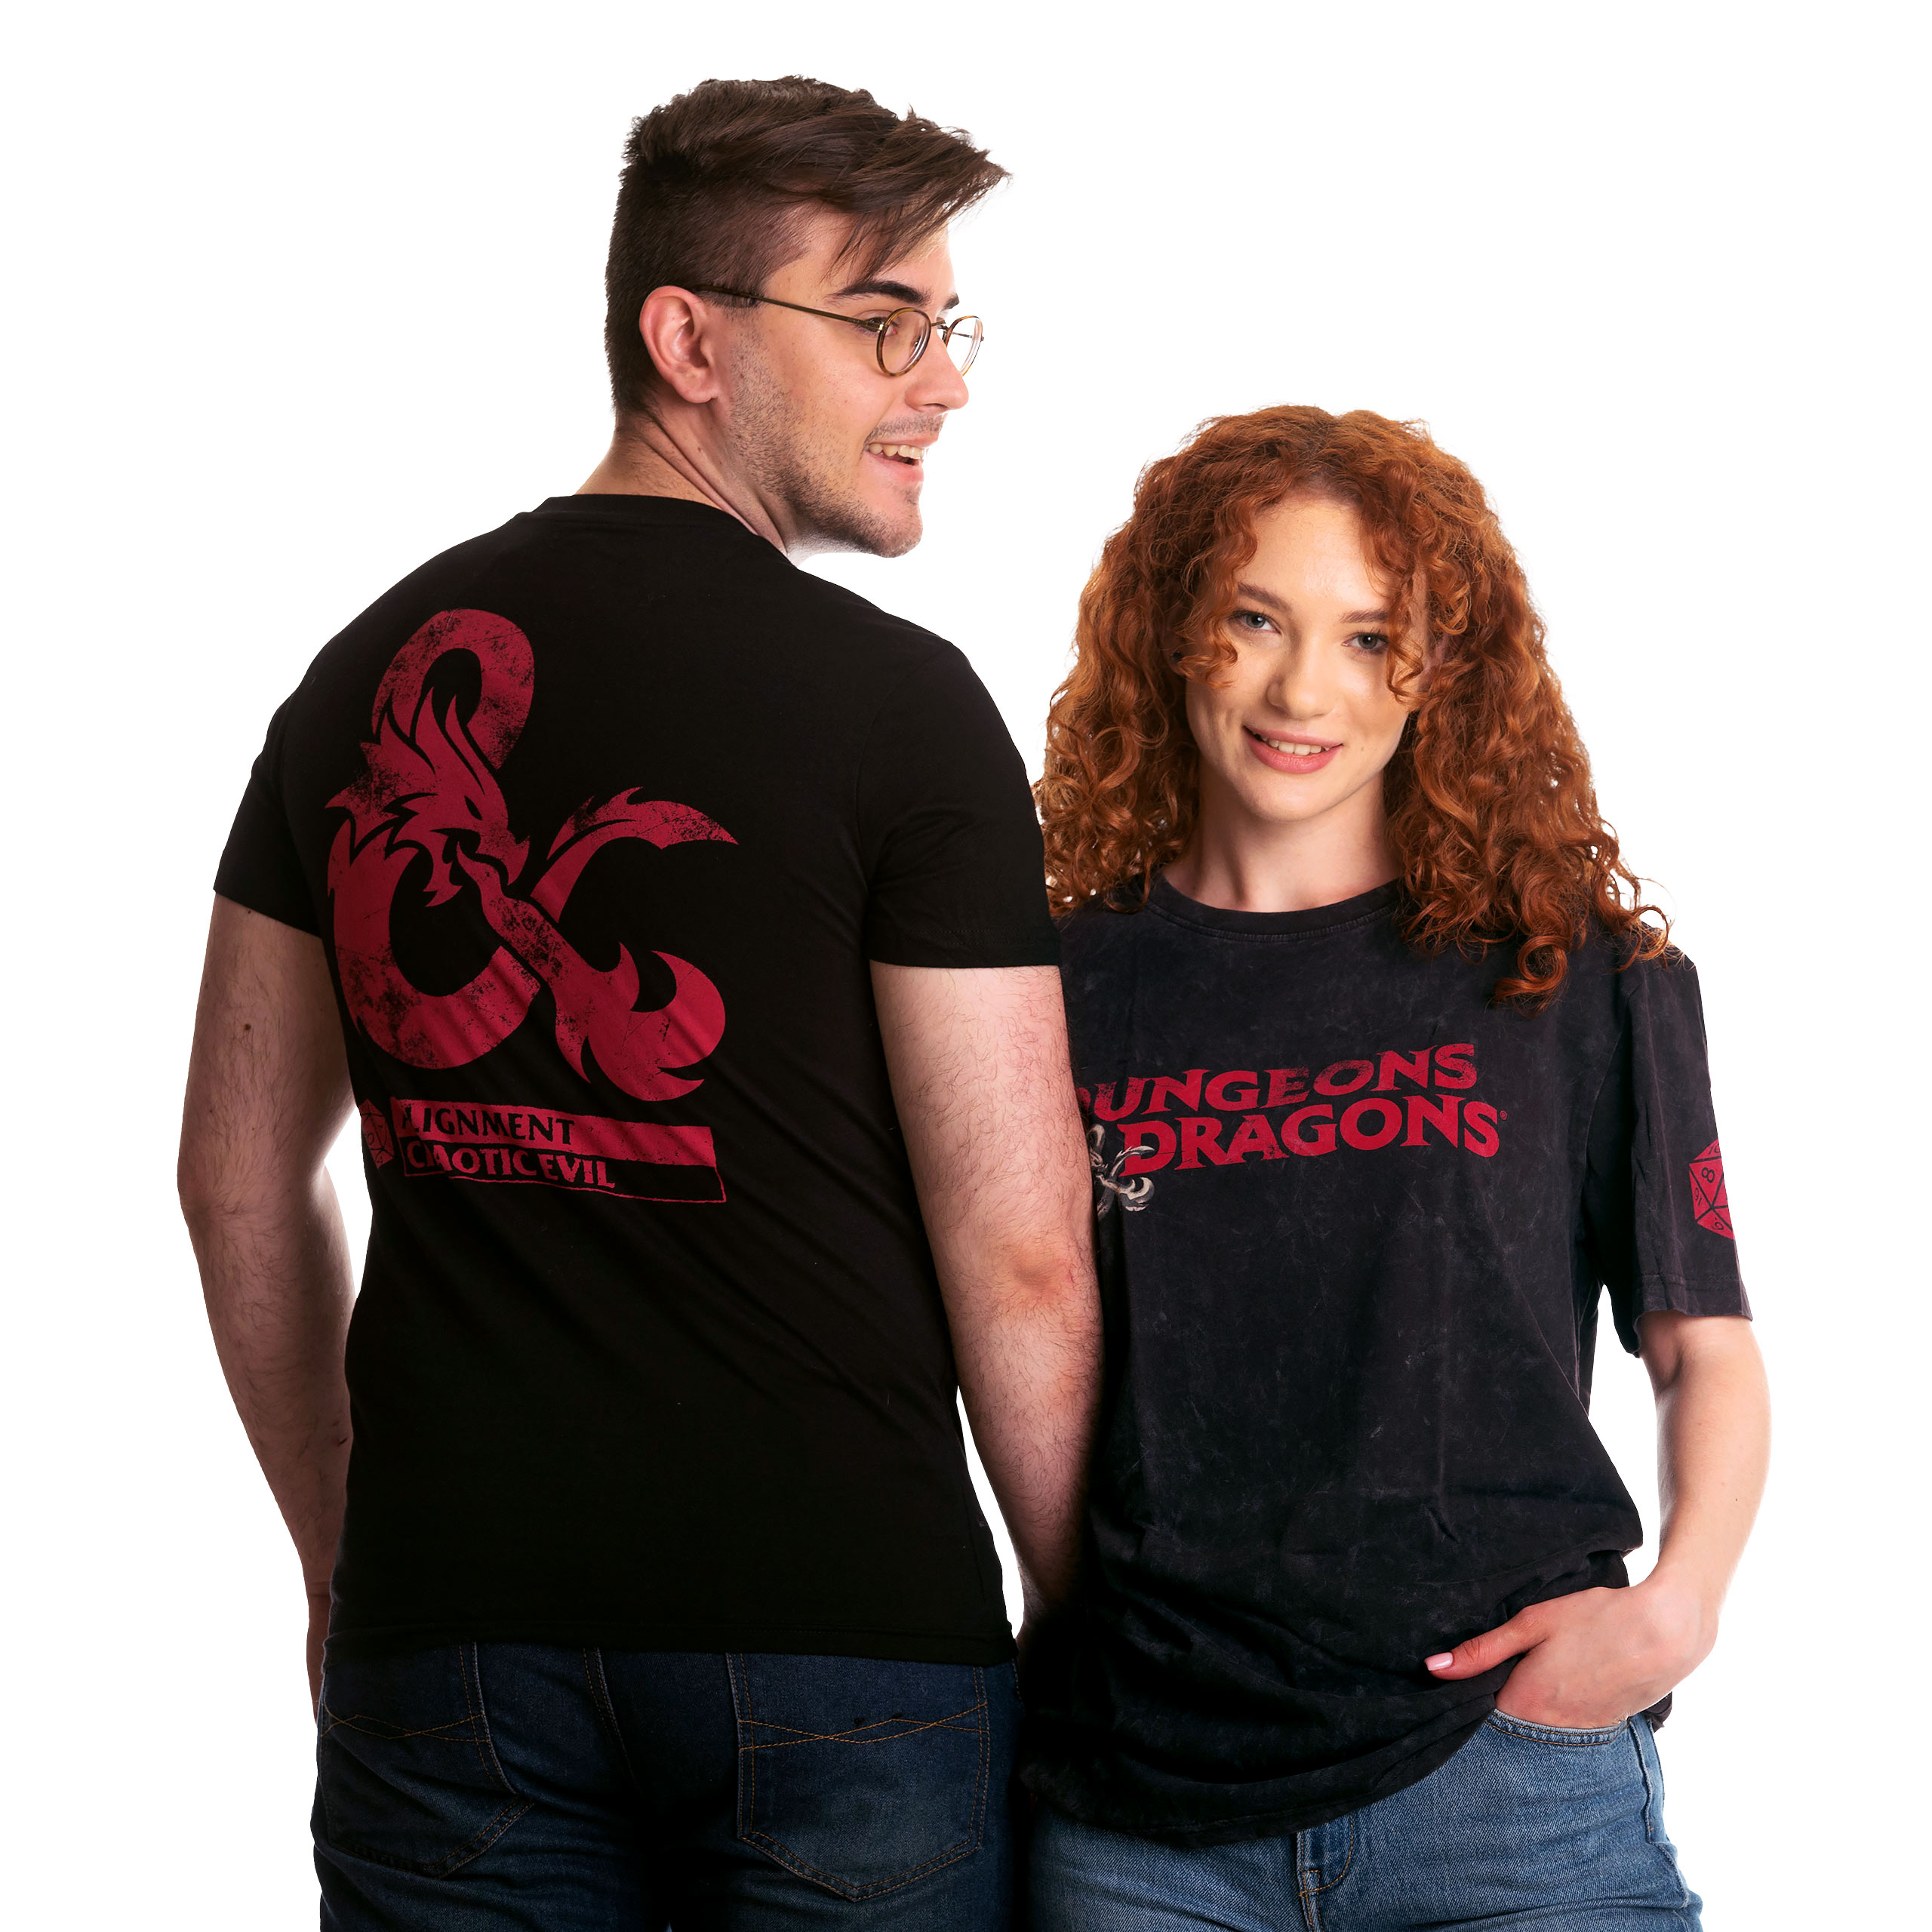 Dungeons & Dragons - Logo T-Shirt black